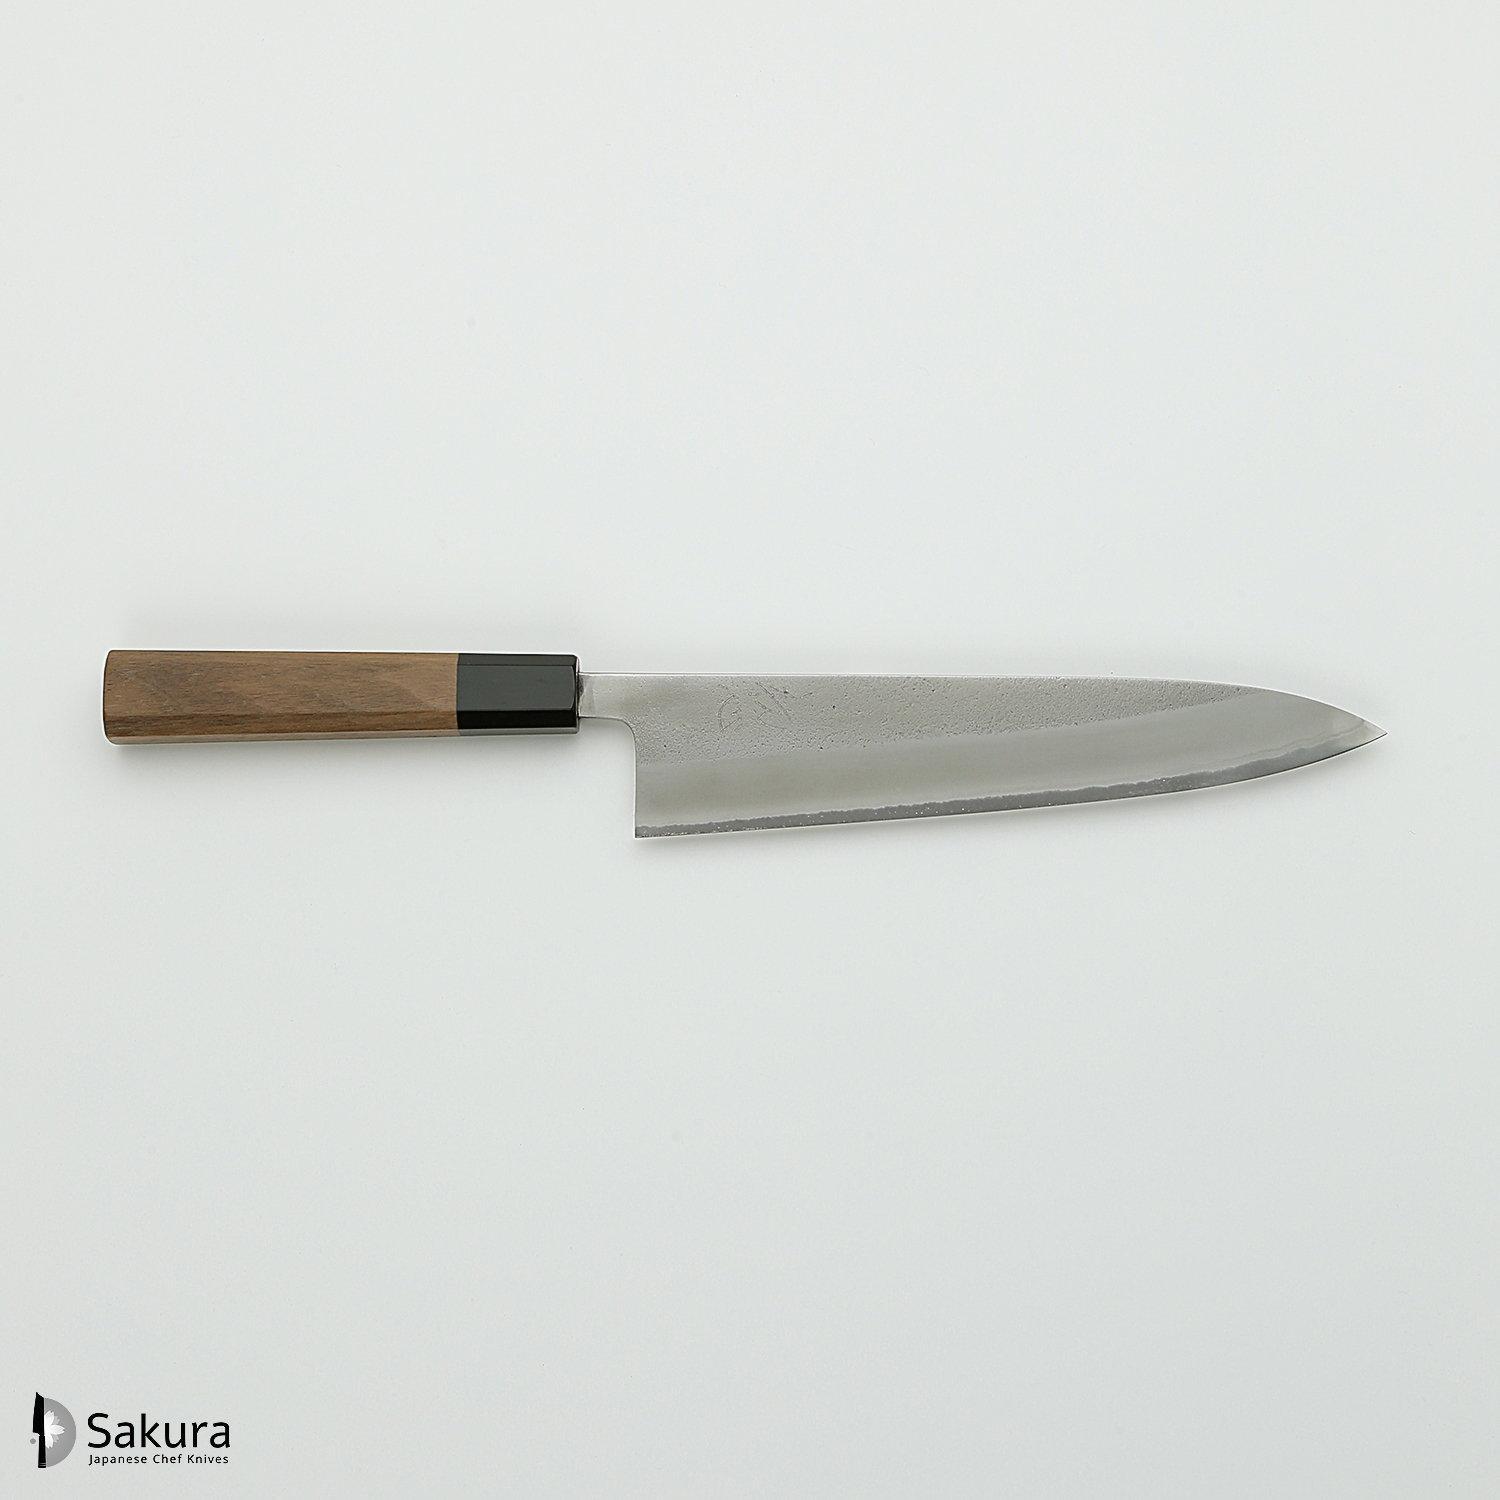 סכין שף רב-תכליתית גִּיוּטוֹ 210מ״מ מחושלת בעבודת יד 3 שכבות: פלדת פחמן יפנית מתקדמת מסוג Shirogami #2 עטופה פלדת אל-חלד גימור מט חיספוס טבעי יושיקאנה יפן